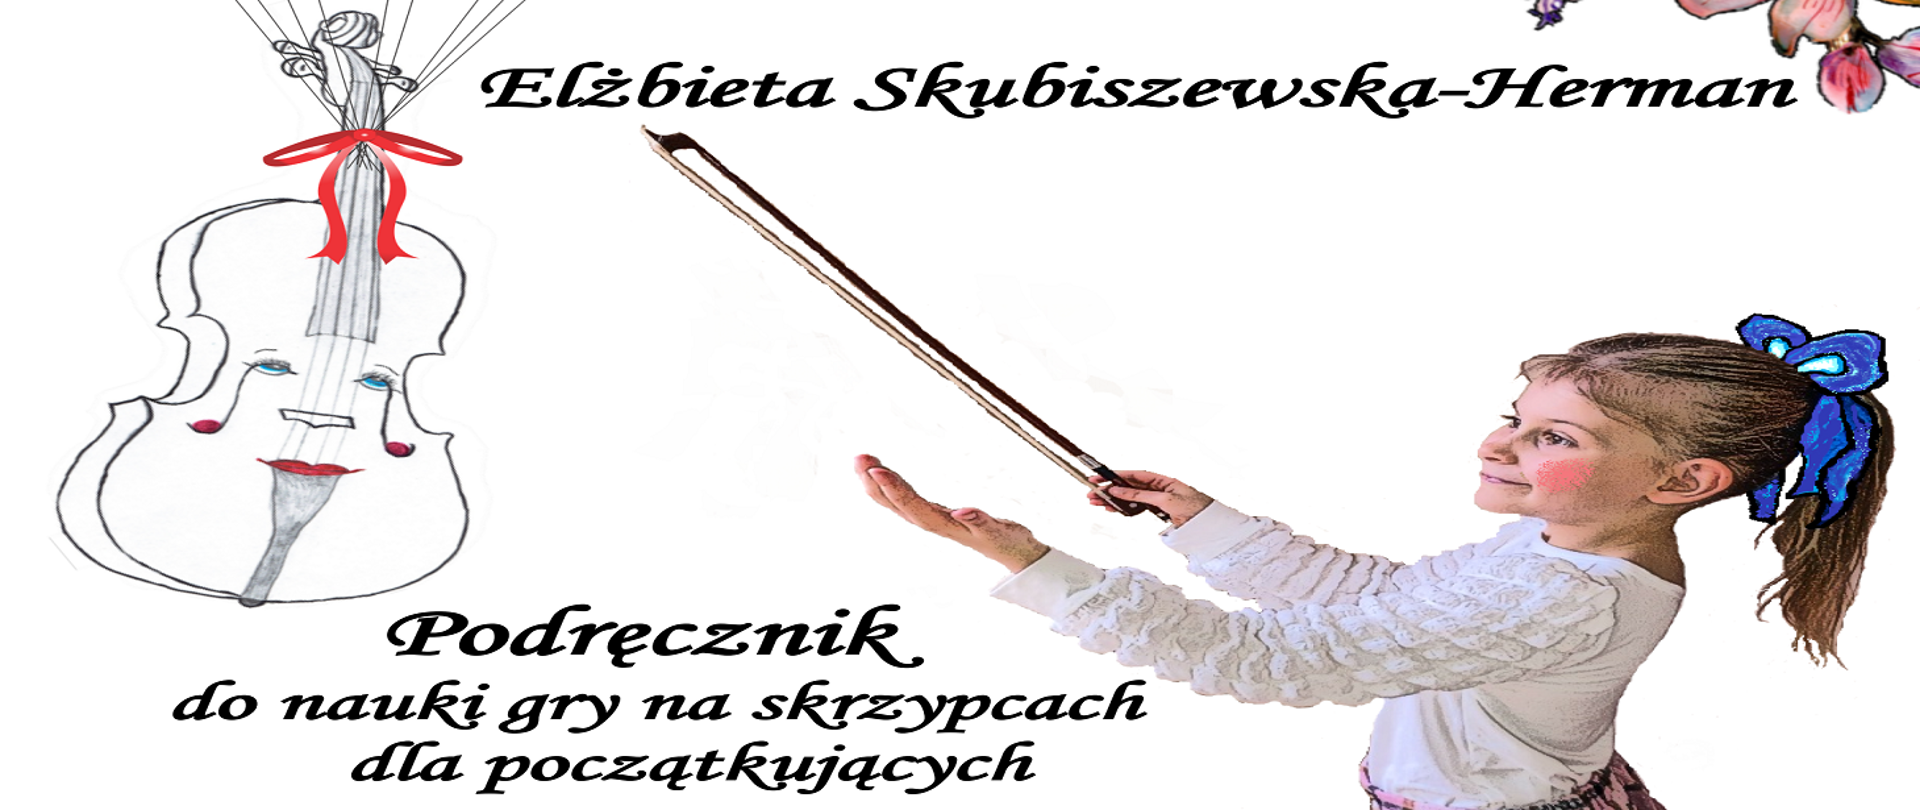 Elżbieta Skubiszewska-Herman Podręcznik do nauki gry na skrzypcach dla początkujących z rysunkiem uczennicy i skrzypiec